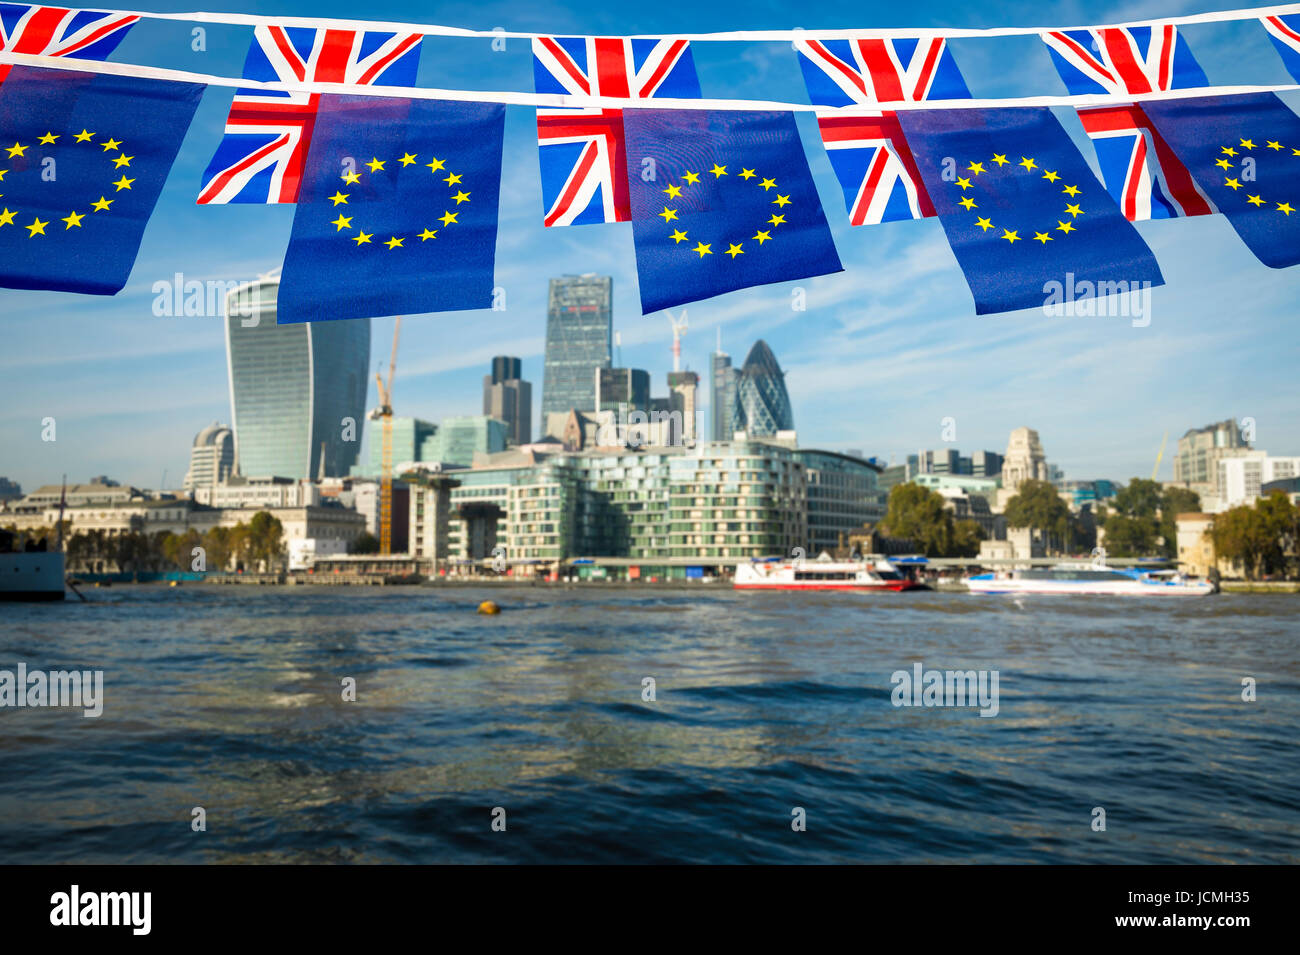 Europäische Union und Union Jack Bunting Fahnen über der Skyline von London des Finanzplatzes Stadt an der Themse Stockfoto